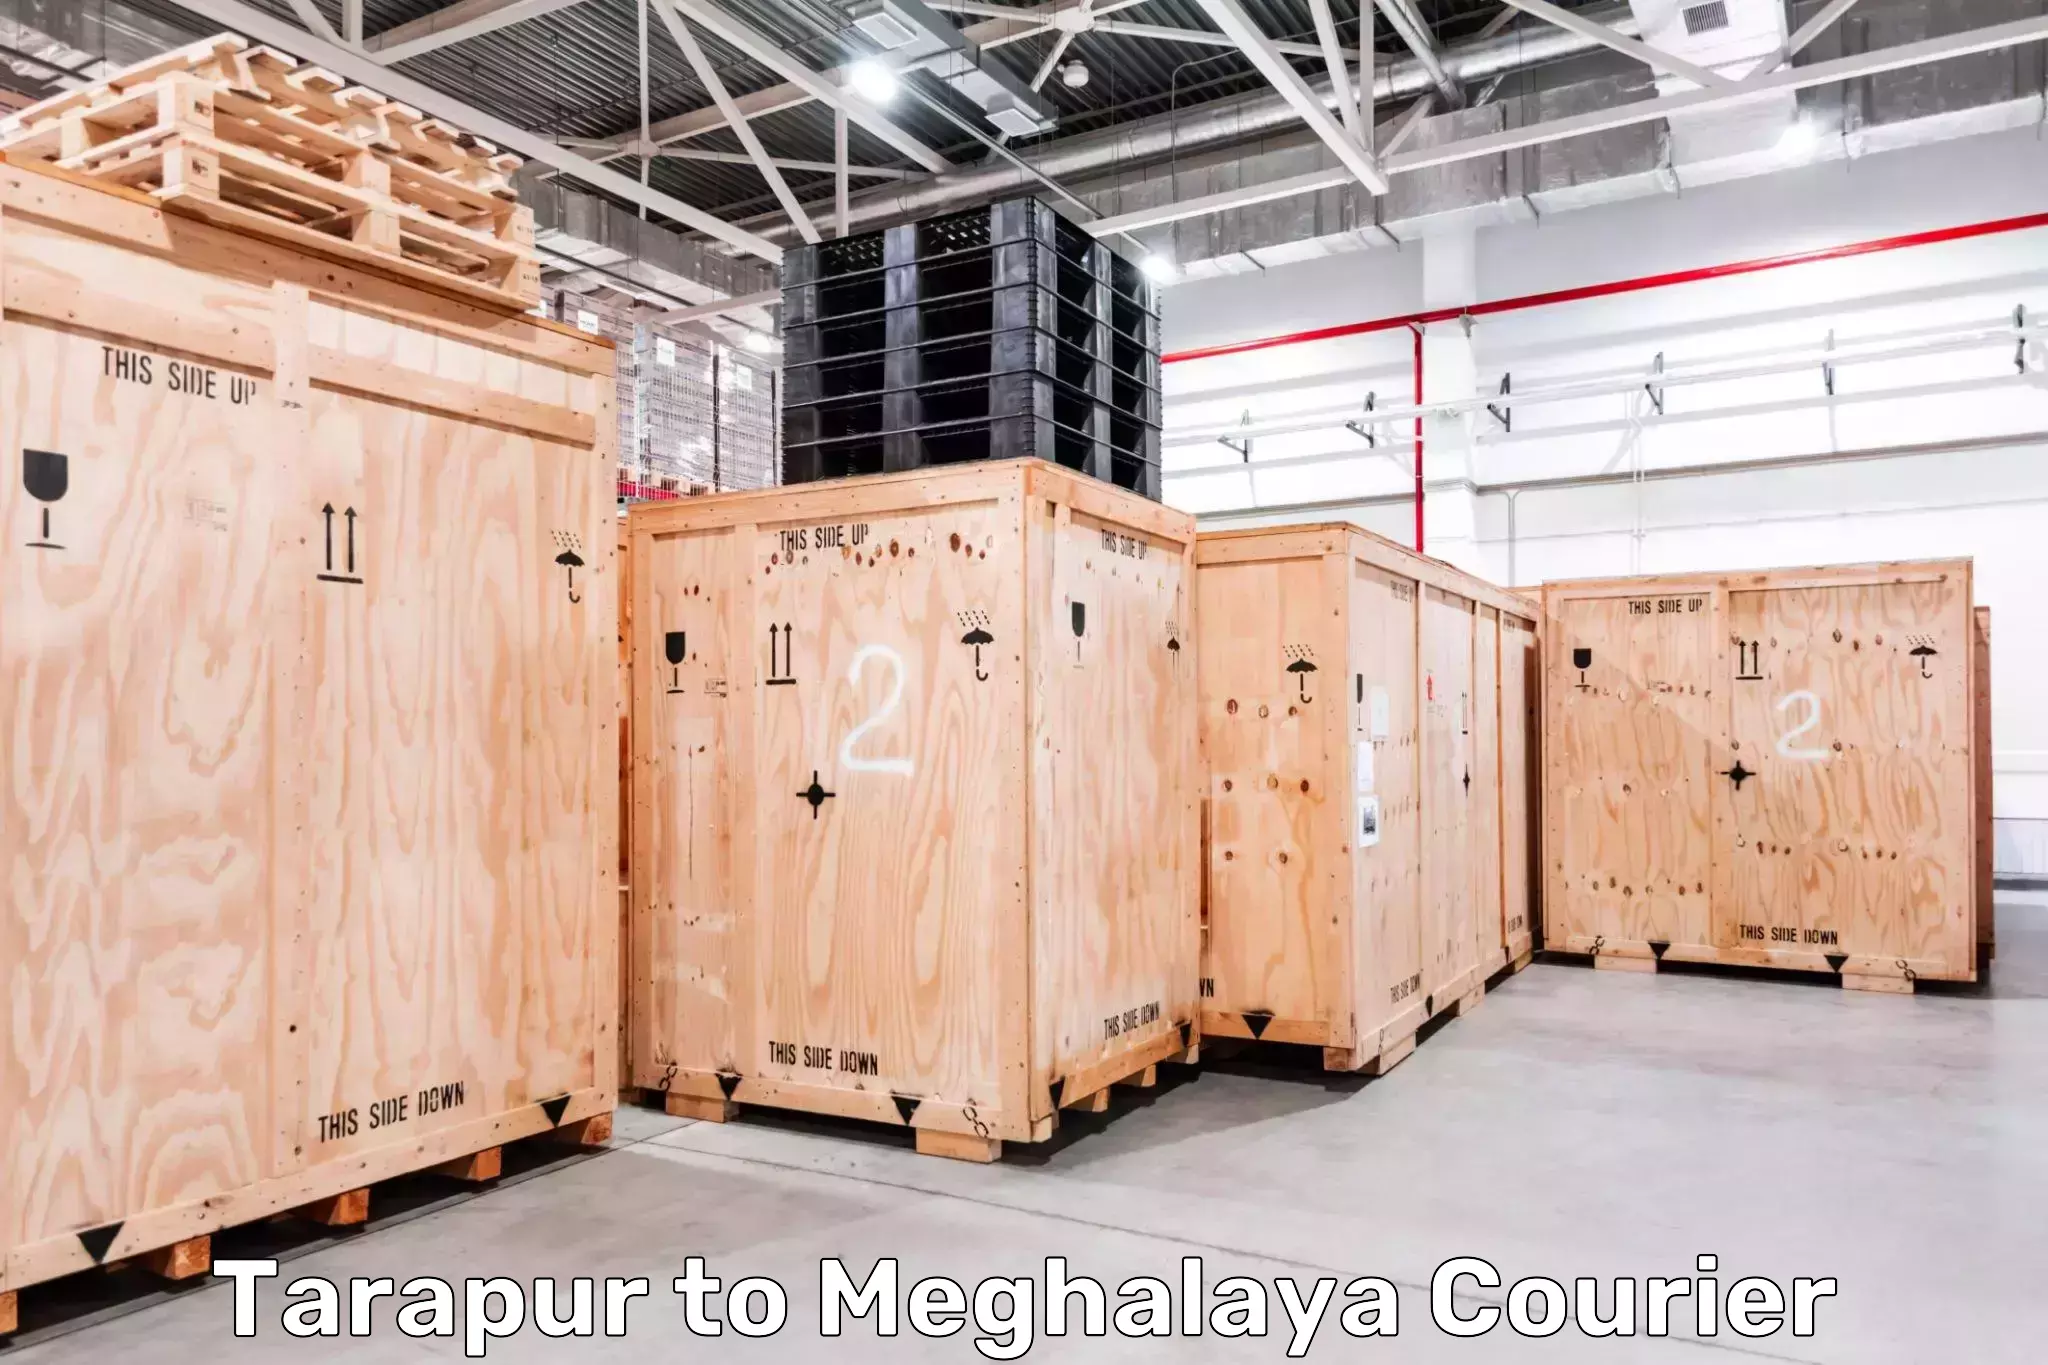 Multi-city courier Tarapur to Jaintia Hills